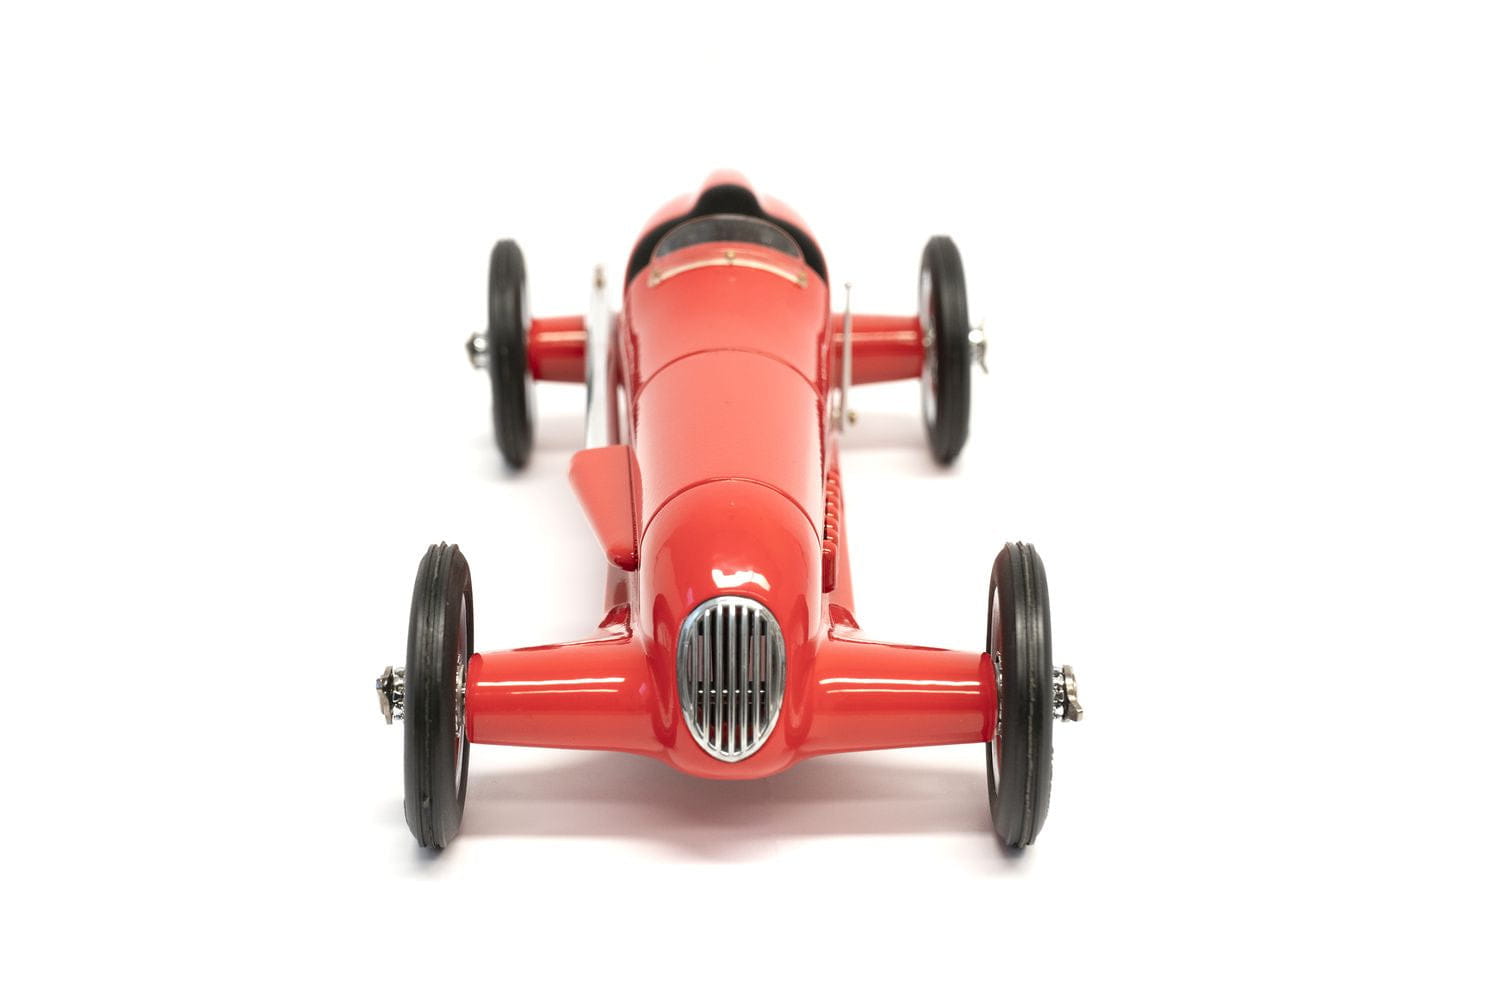 Modèles authentiques Racer Modelauto, rouge